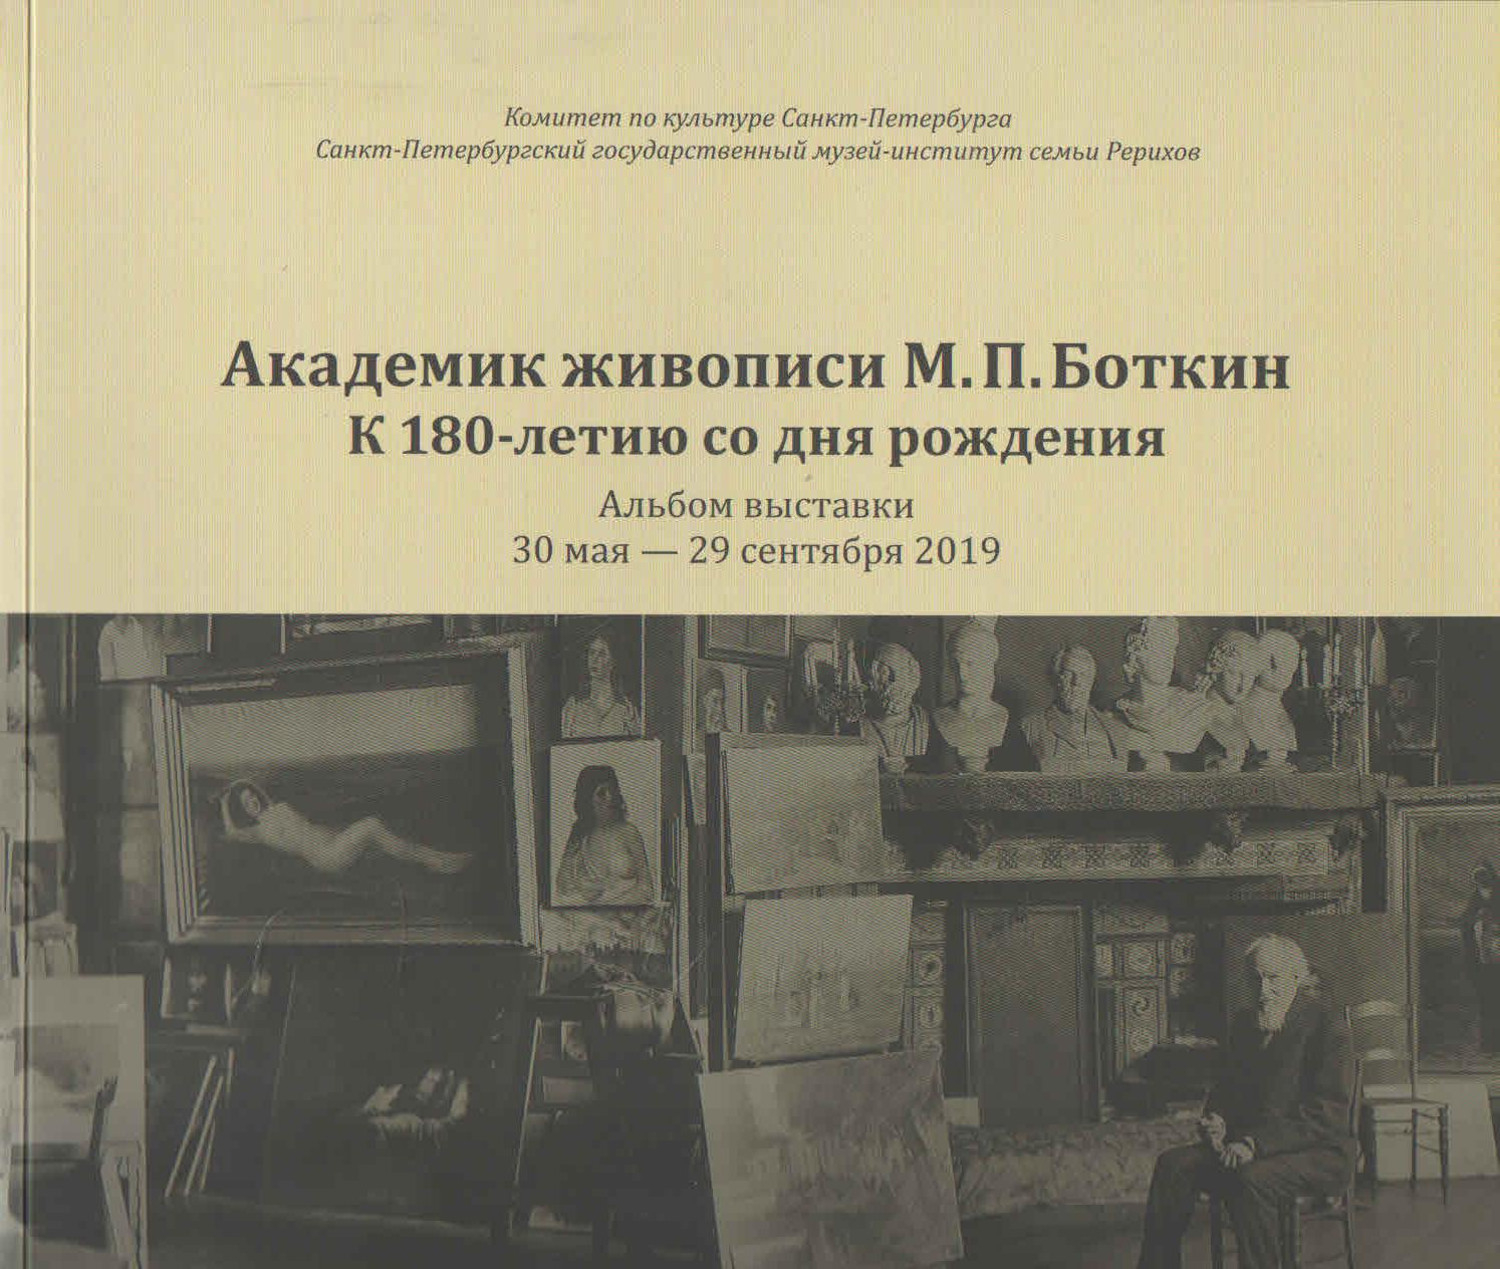 Академик живописи М. П. Боткин. К 180-летию со дня рождения. Альбом выставки. 